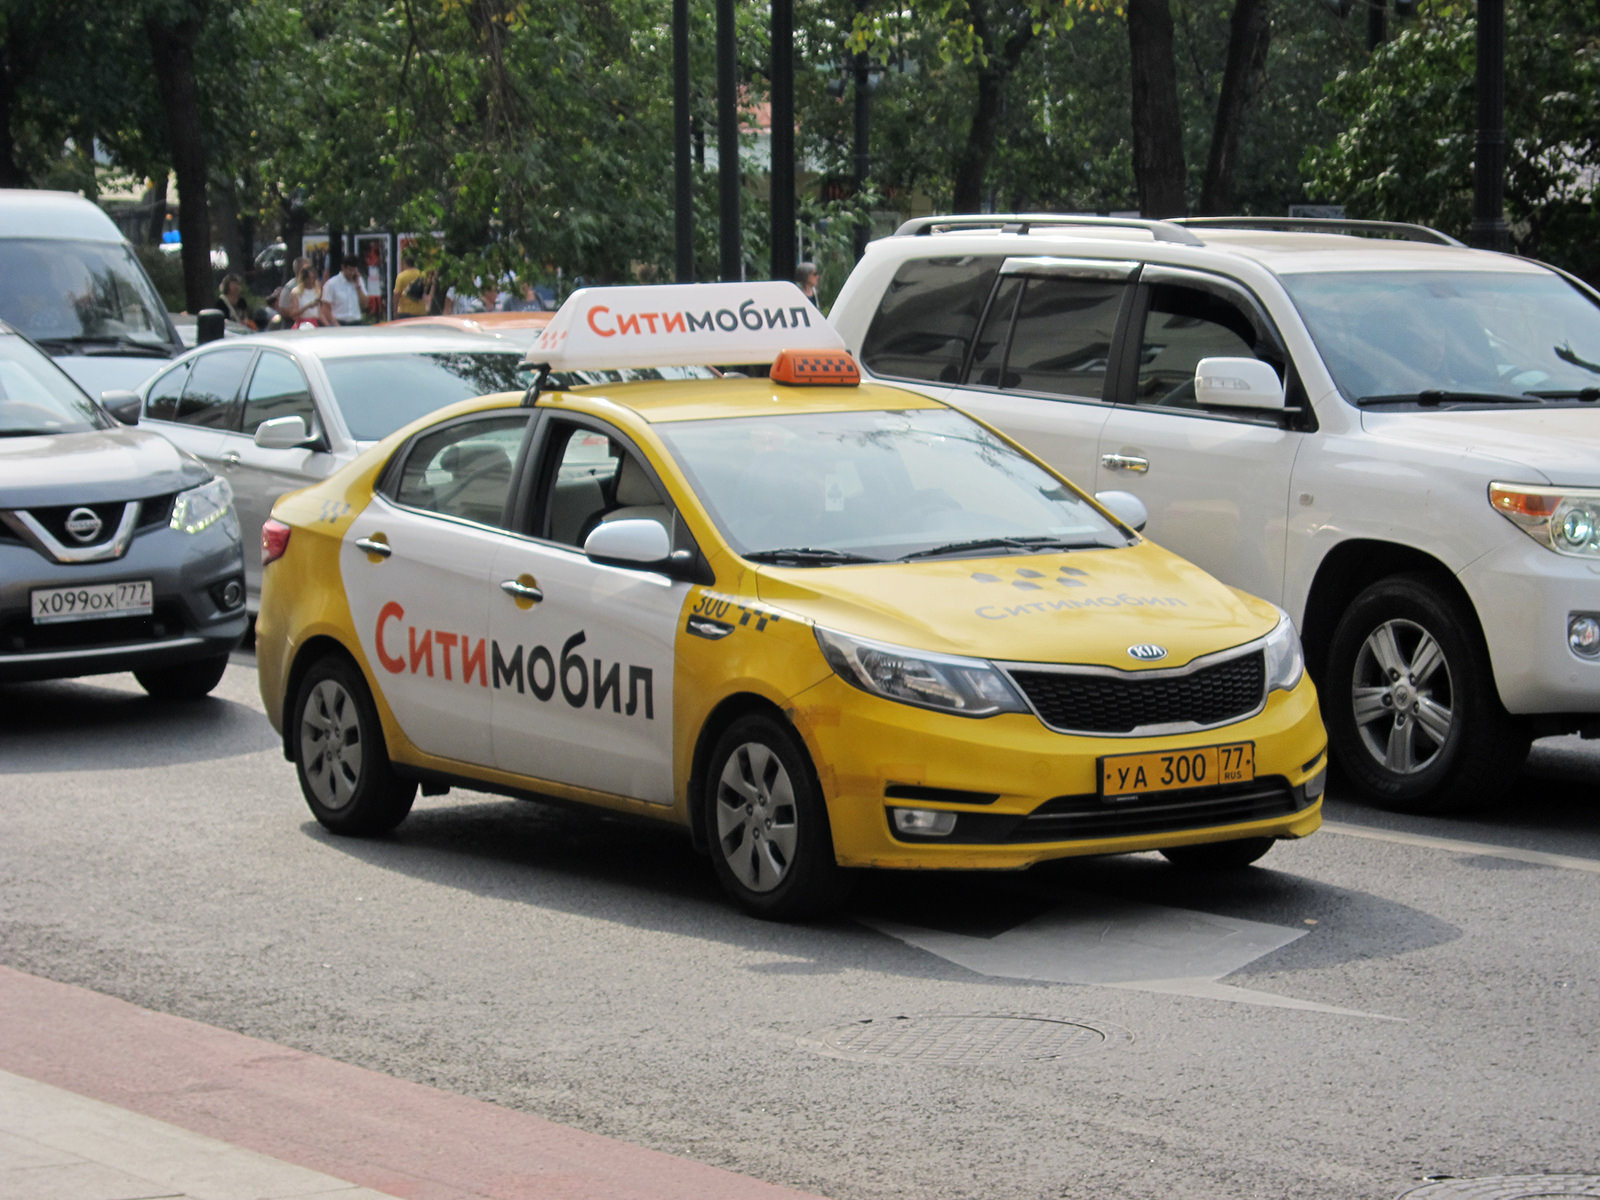 Сити мобил машины. Сити мобил. Машина такси Сити мобил. Такси Ситимобил в Москве.